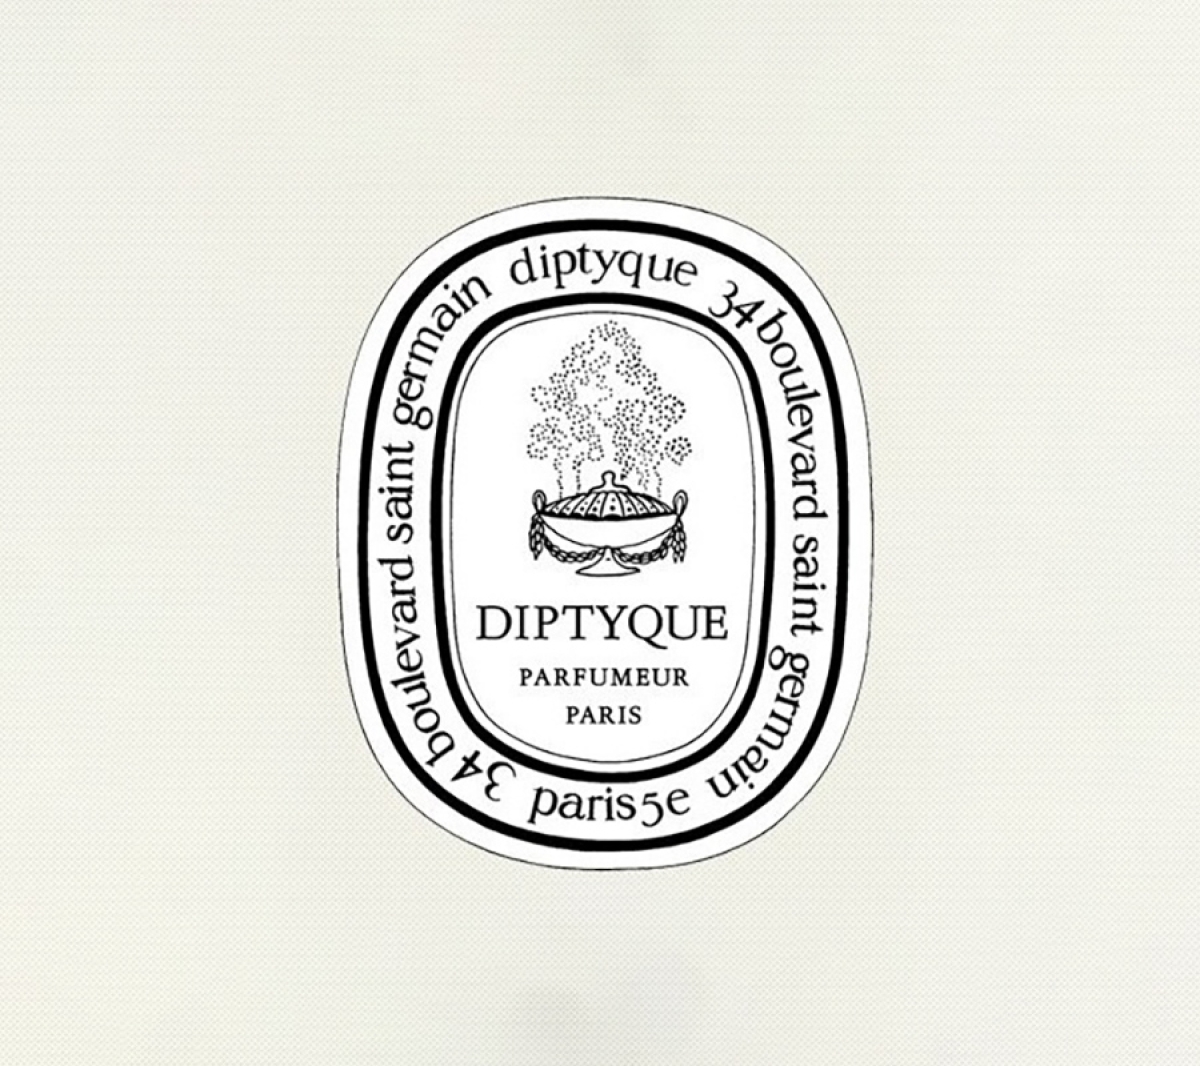 DIPTYQUE-logo-case-study-calendar